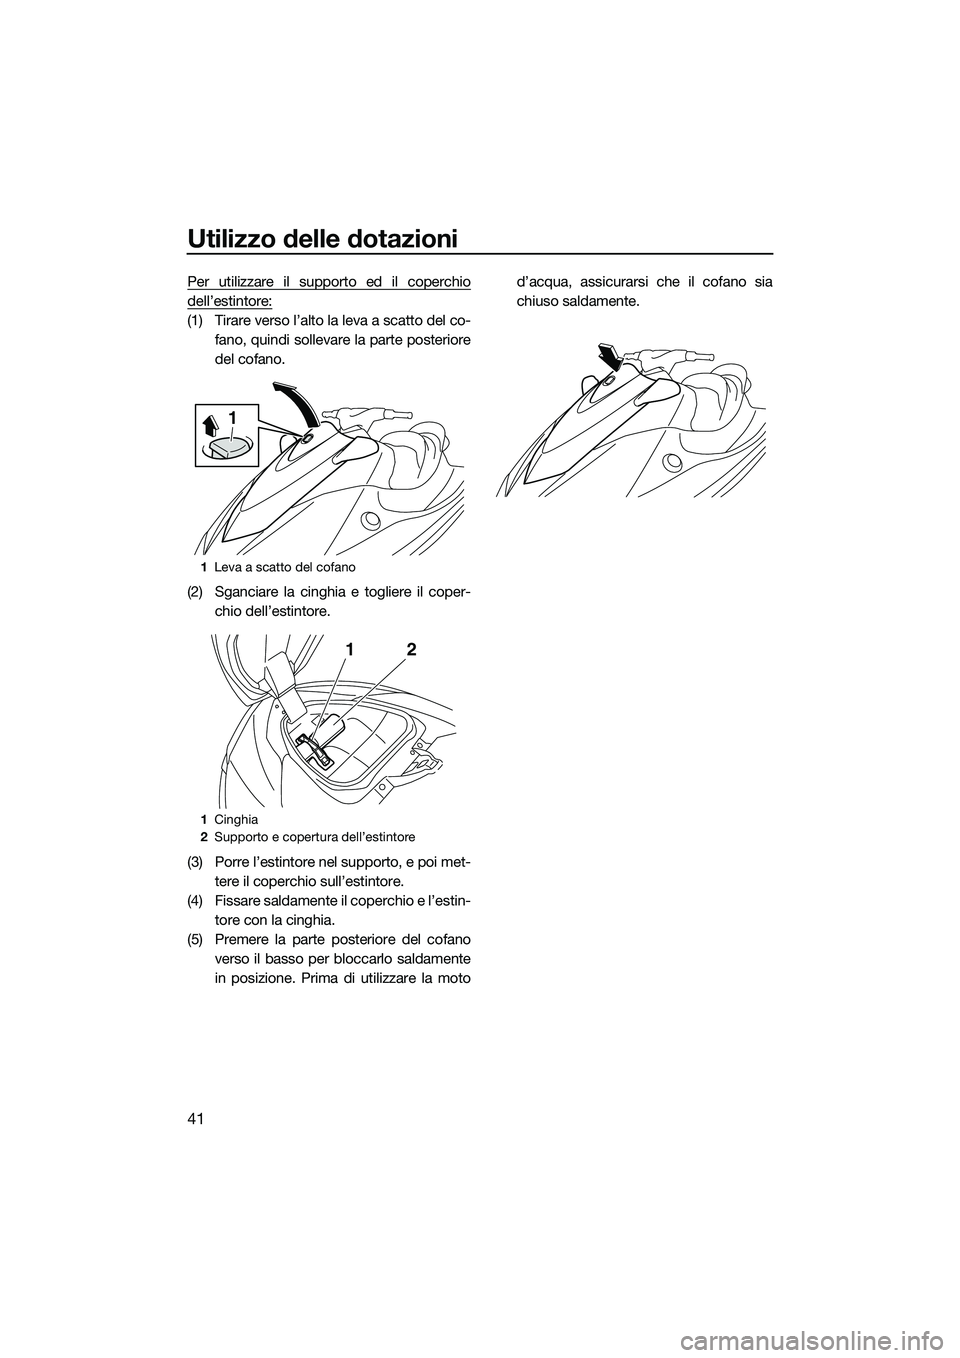 YAMAHA V1 SPORT 2015  Manuale duso (in Italian) Utilizzo delle dotazioni
41
Per utilizzare il supporto ed il coperchio
dell’estintore:
(1) Tirare verso l’alto la leva a scatto del co-fano, quindi sollevare la parte posteriore
del cofano.
(2) Sg